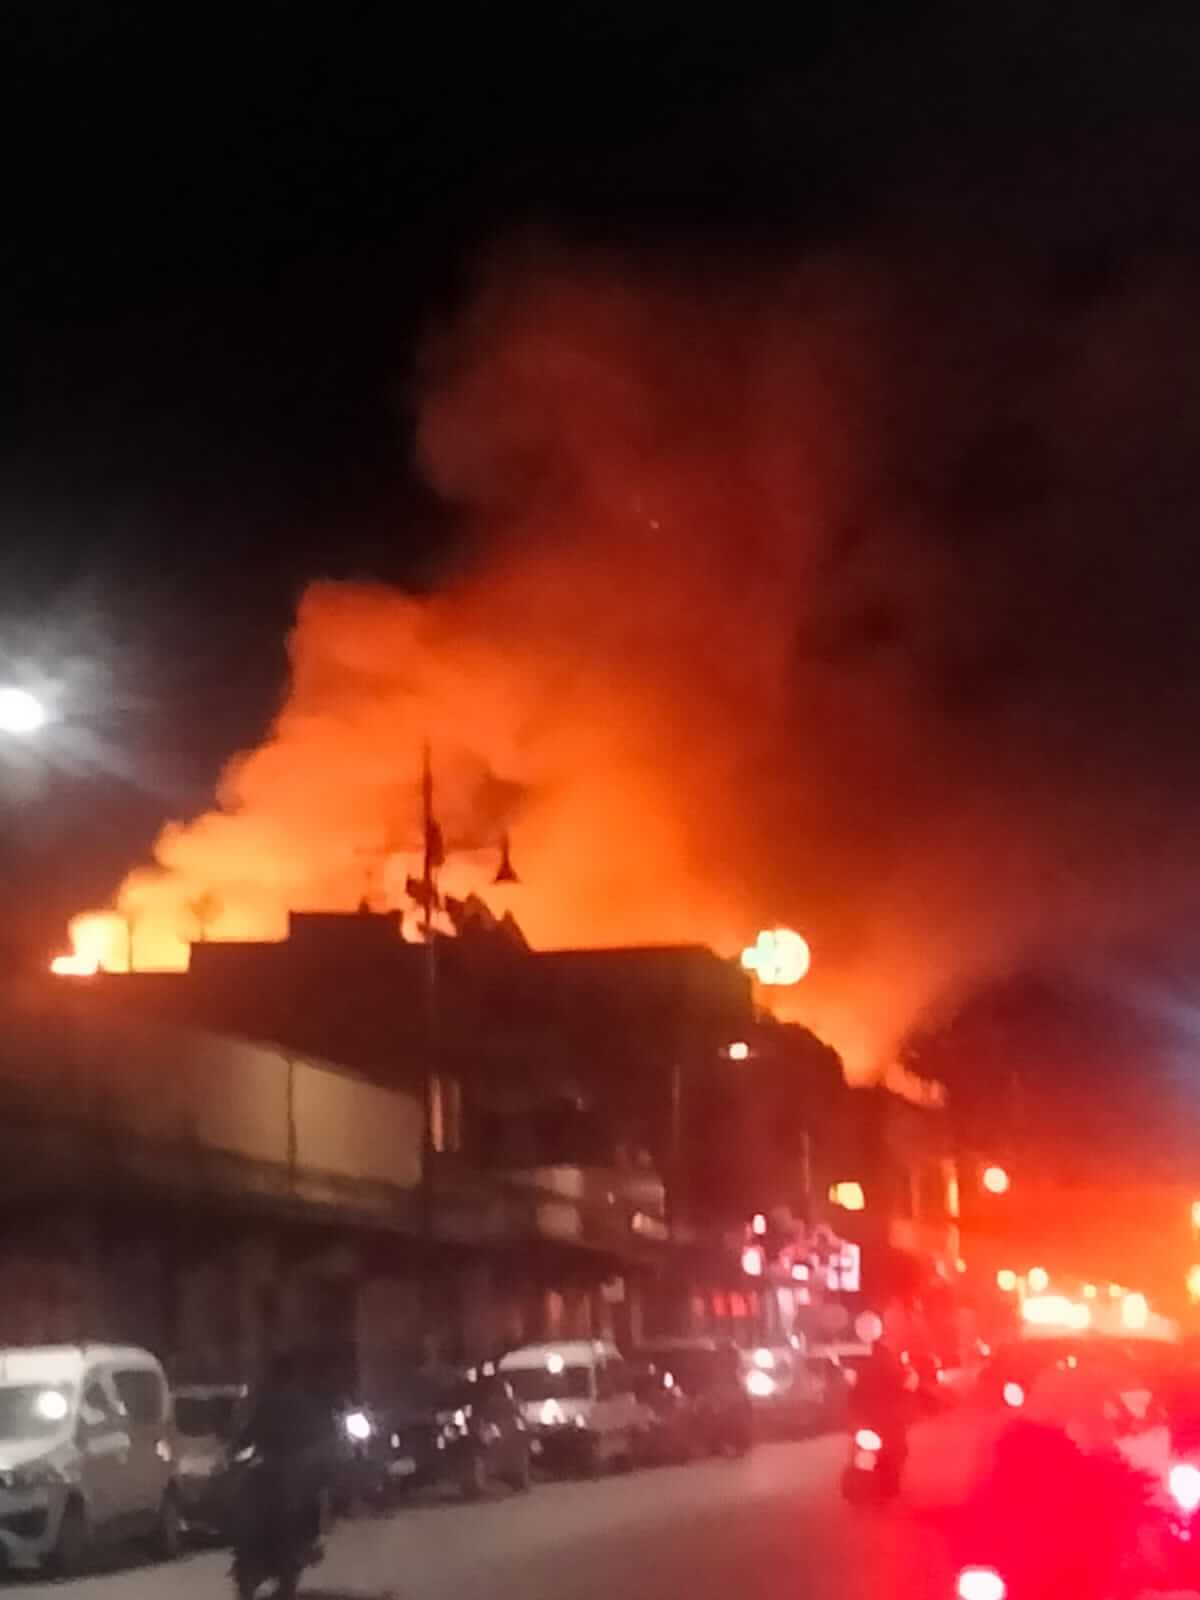 عاجل: اندلاع حريق ضخم بالمدينة العتيقة بمراكش + صور – Kech24: Maroc News – كِشـ24 : جريدة إلكترونية مغربية